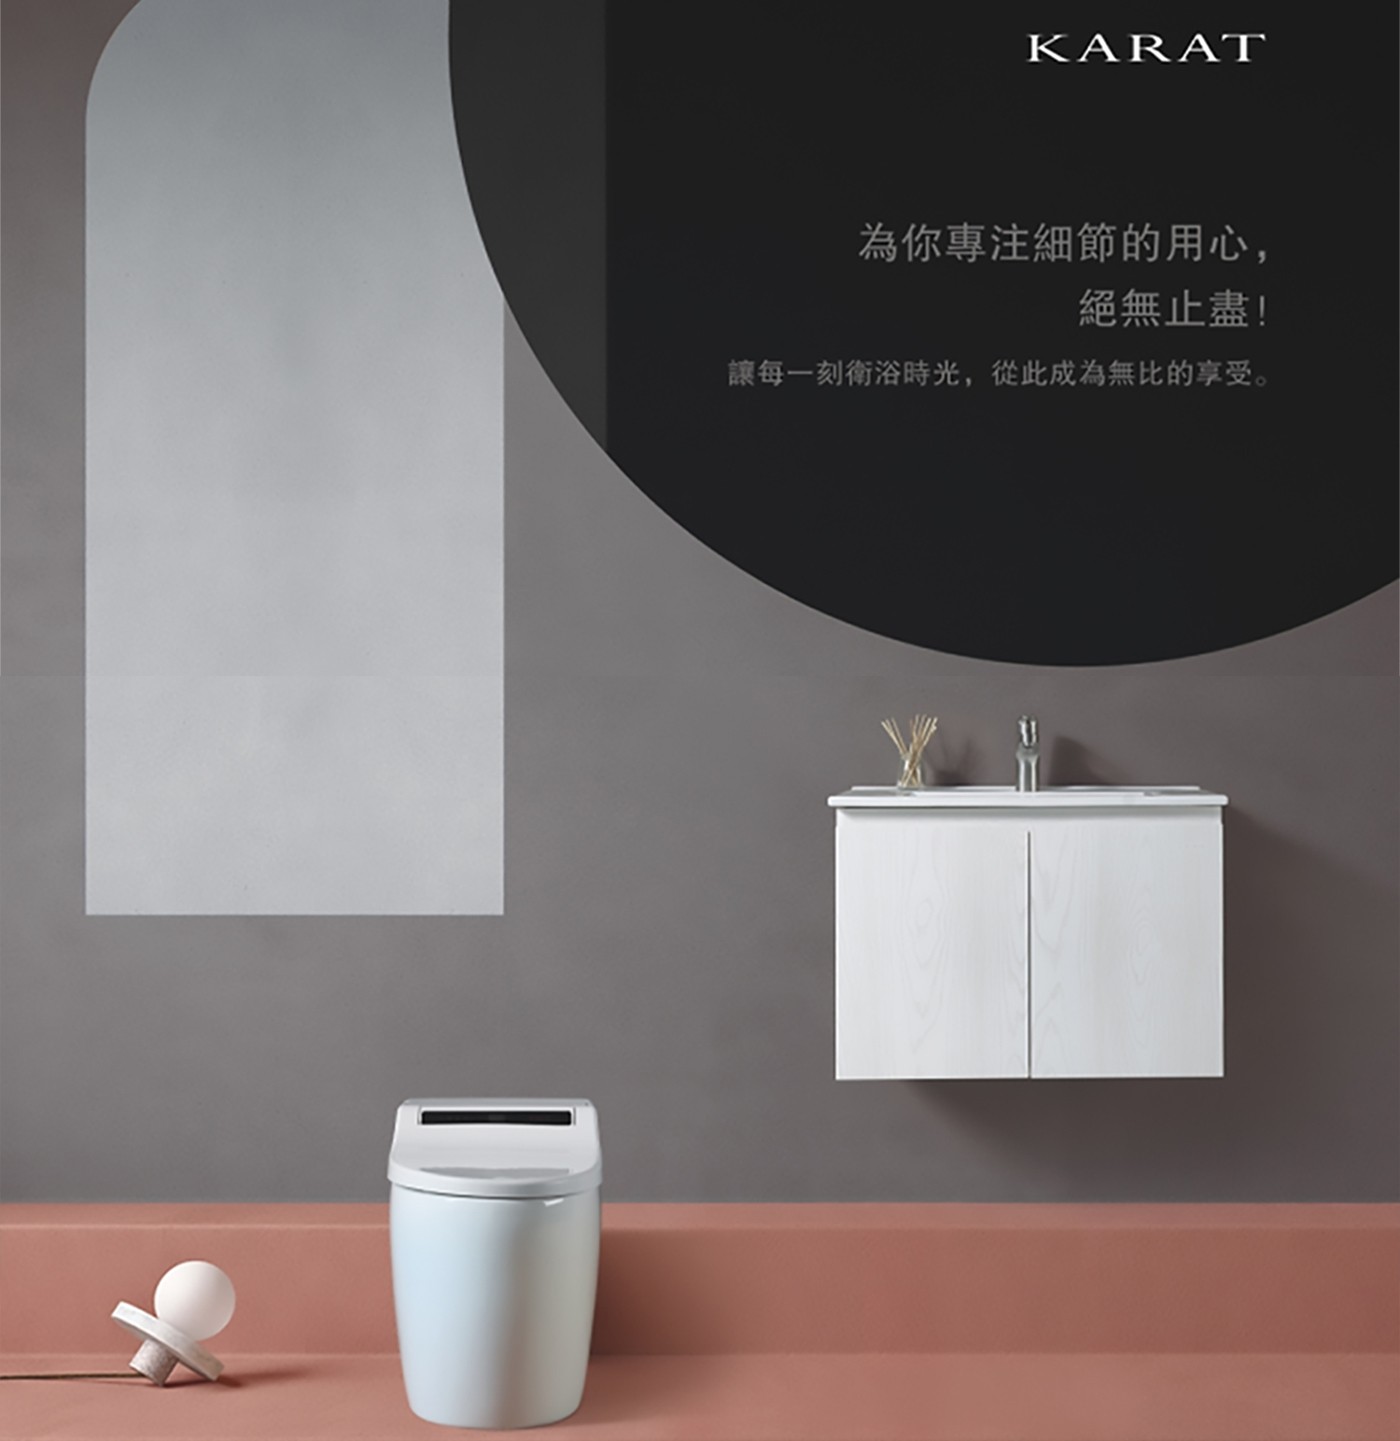 KARAT 四合一暖風乾燥機 [附橫式無線遙控器] 產品介紹